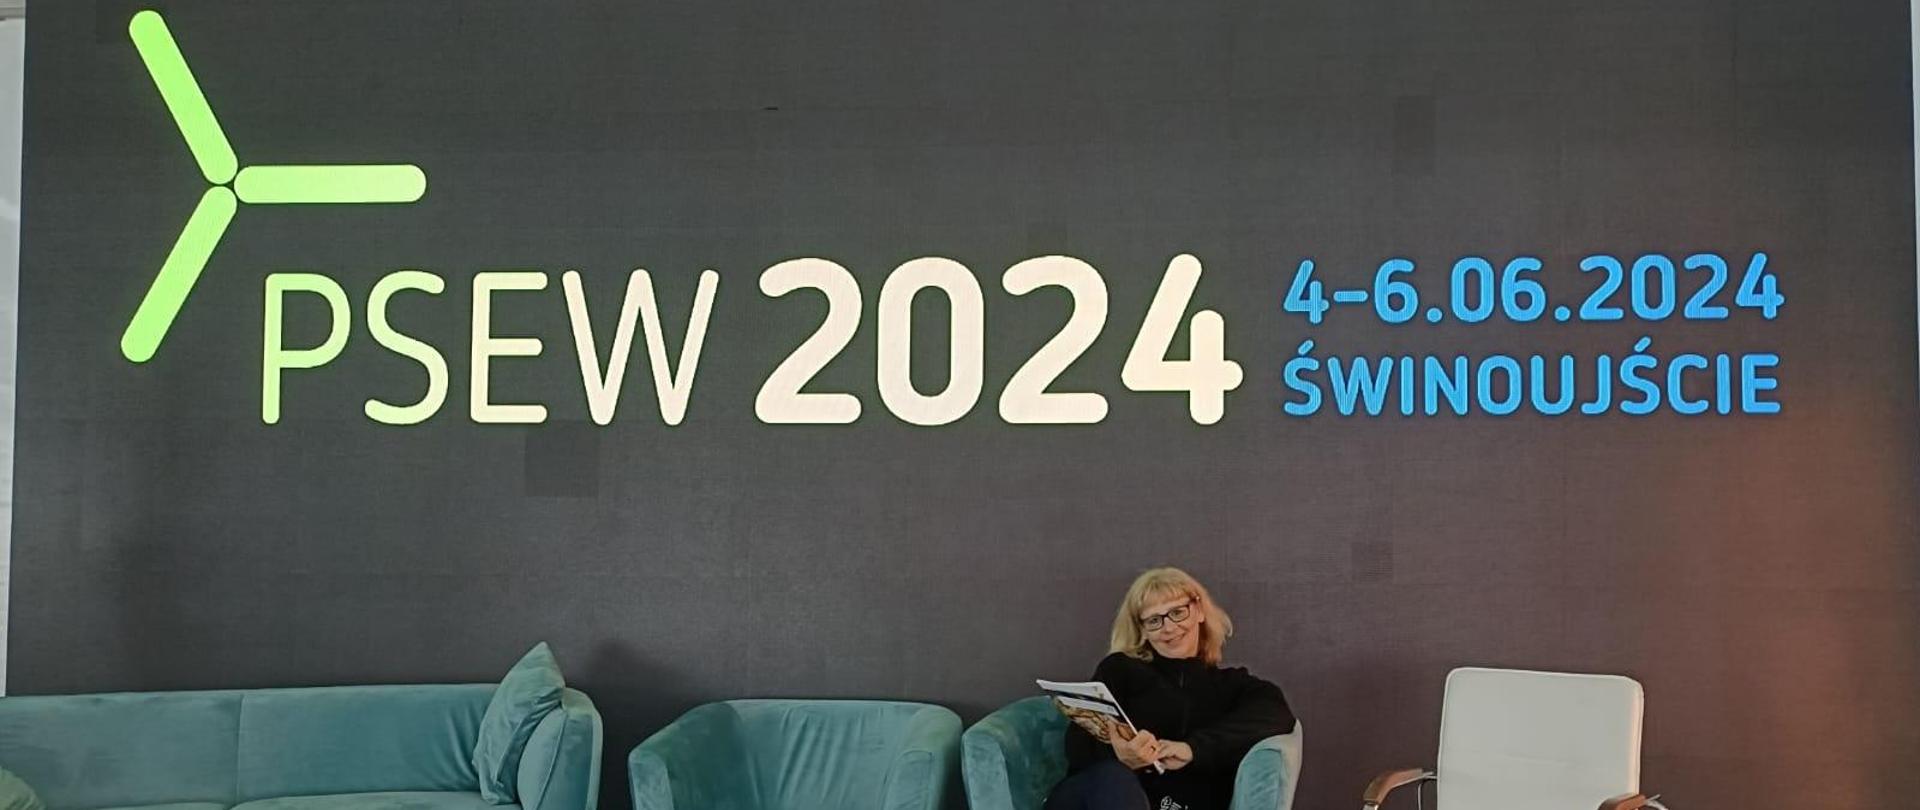 Na tle szarej ściany z napisem: PSEW 2024, 4-6.06.2024 Świnoujście, siedzi uśmiechnięta kobieta,